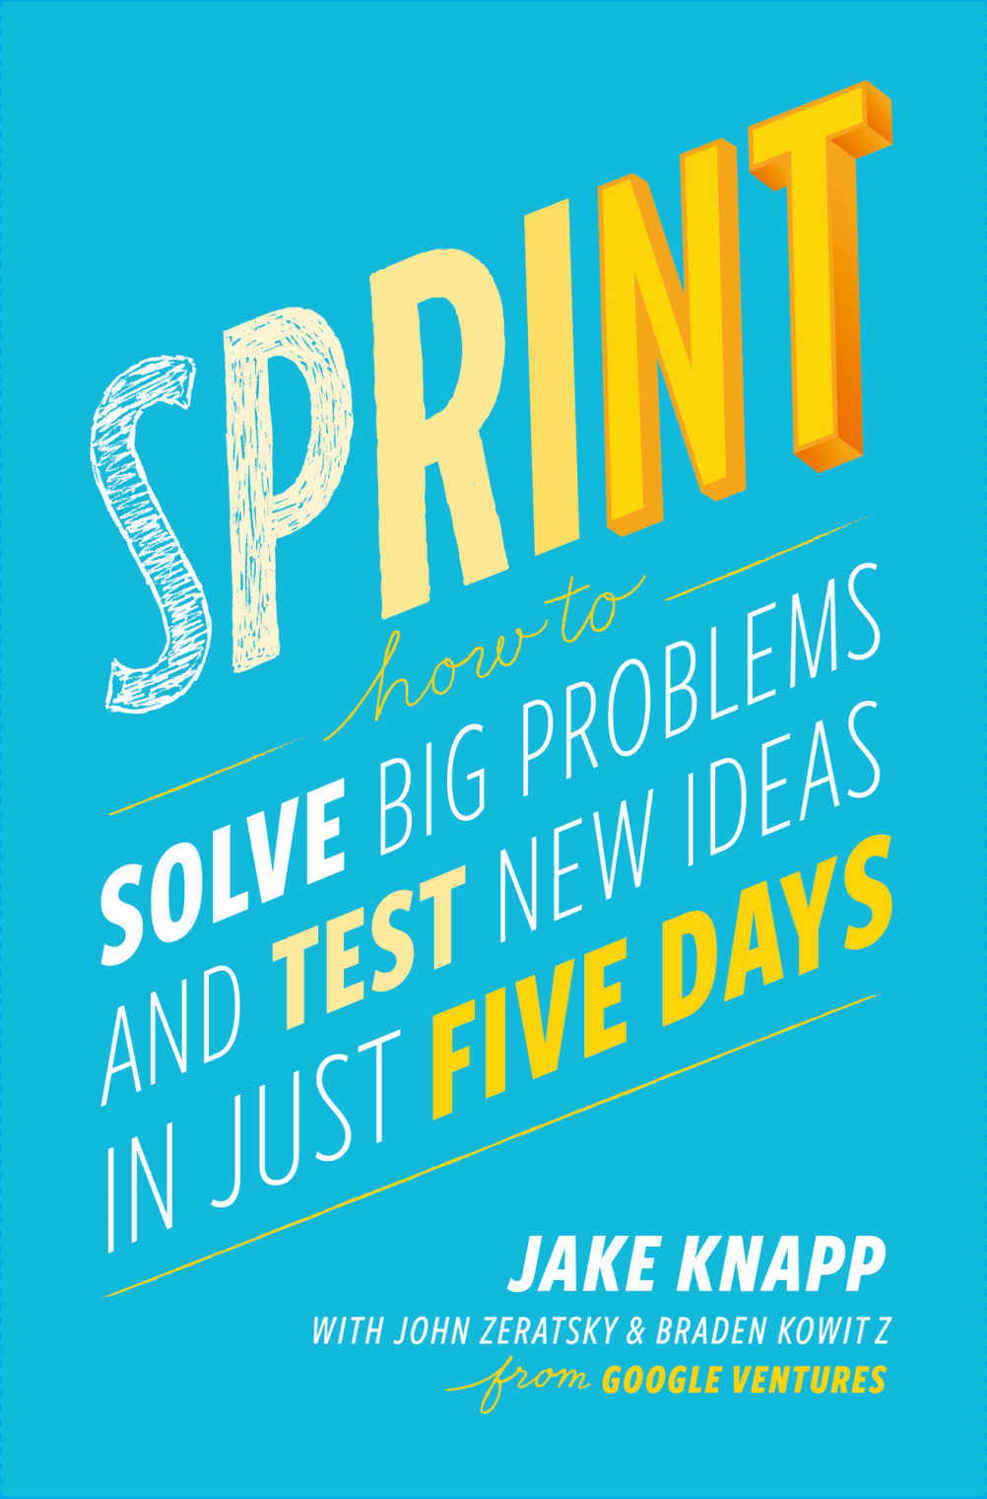 design sprint cover